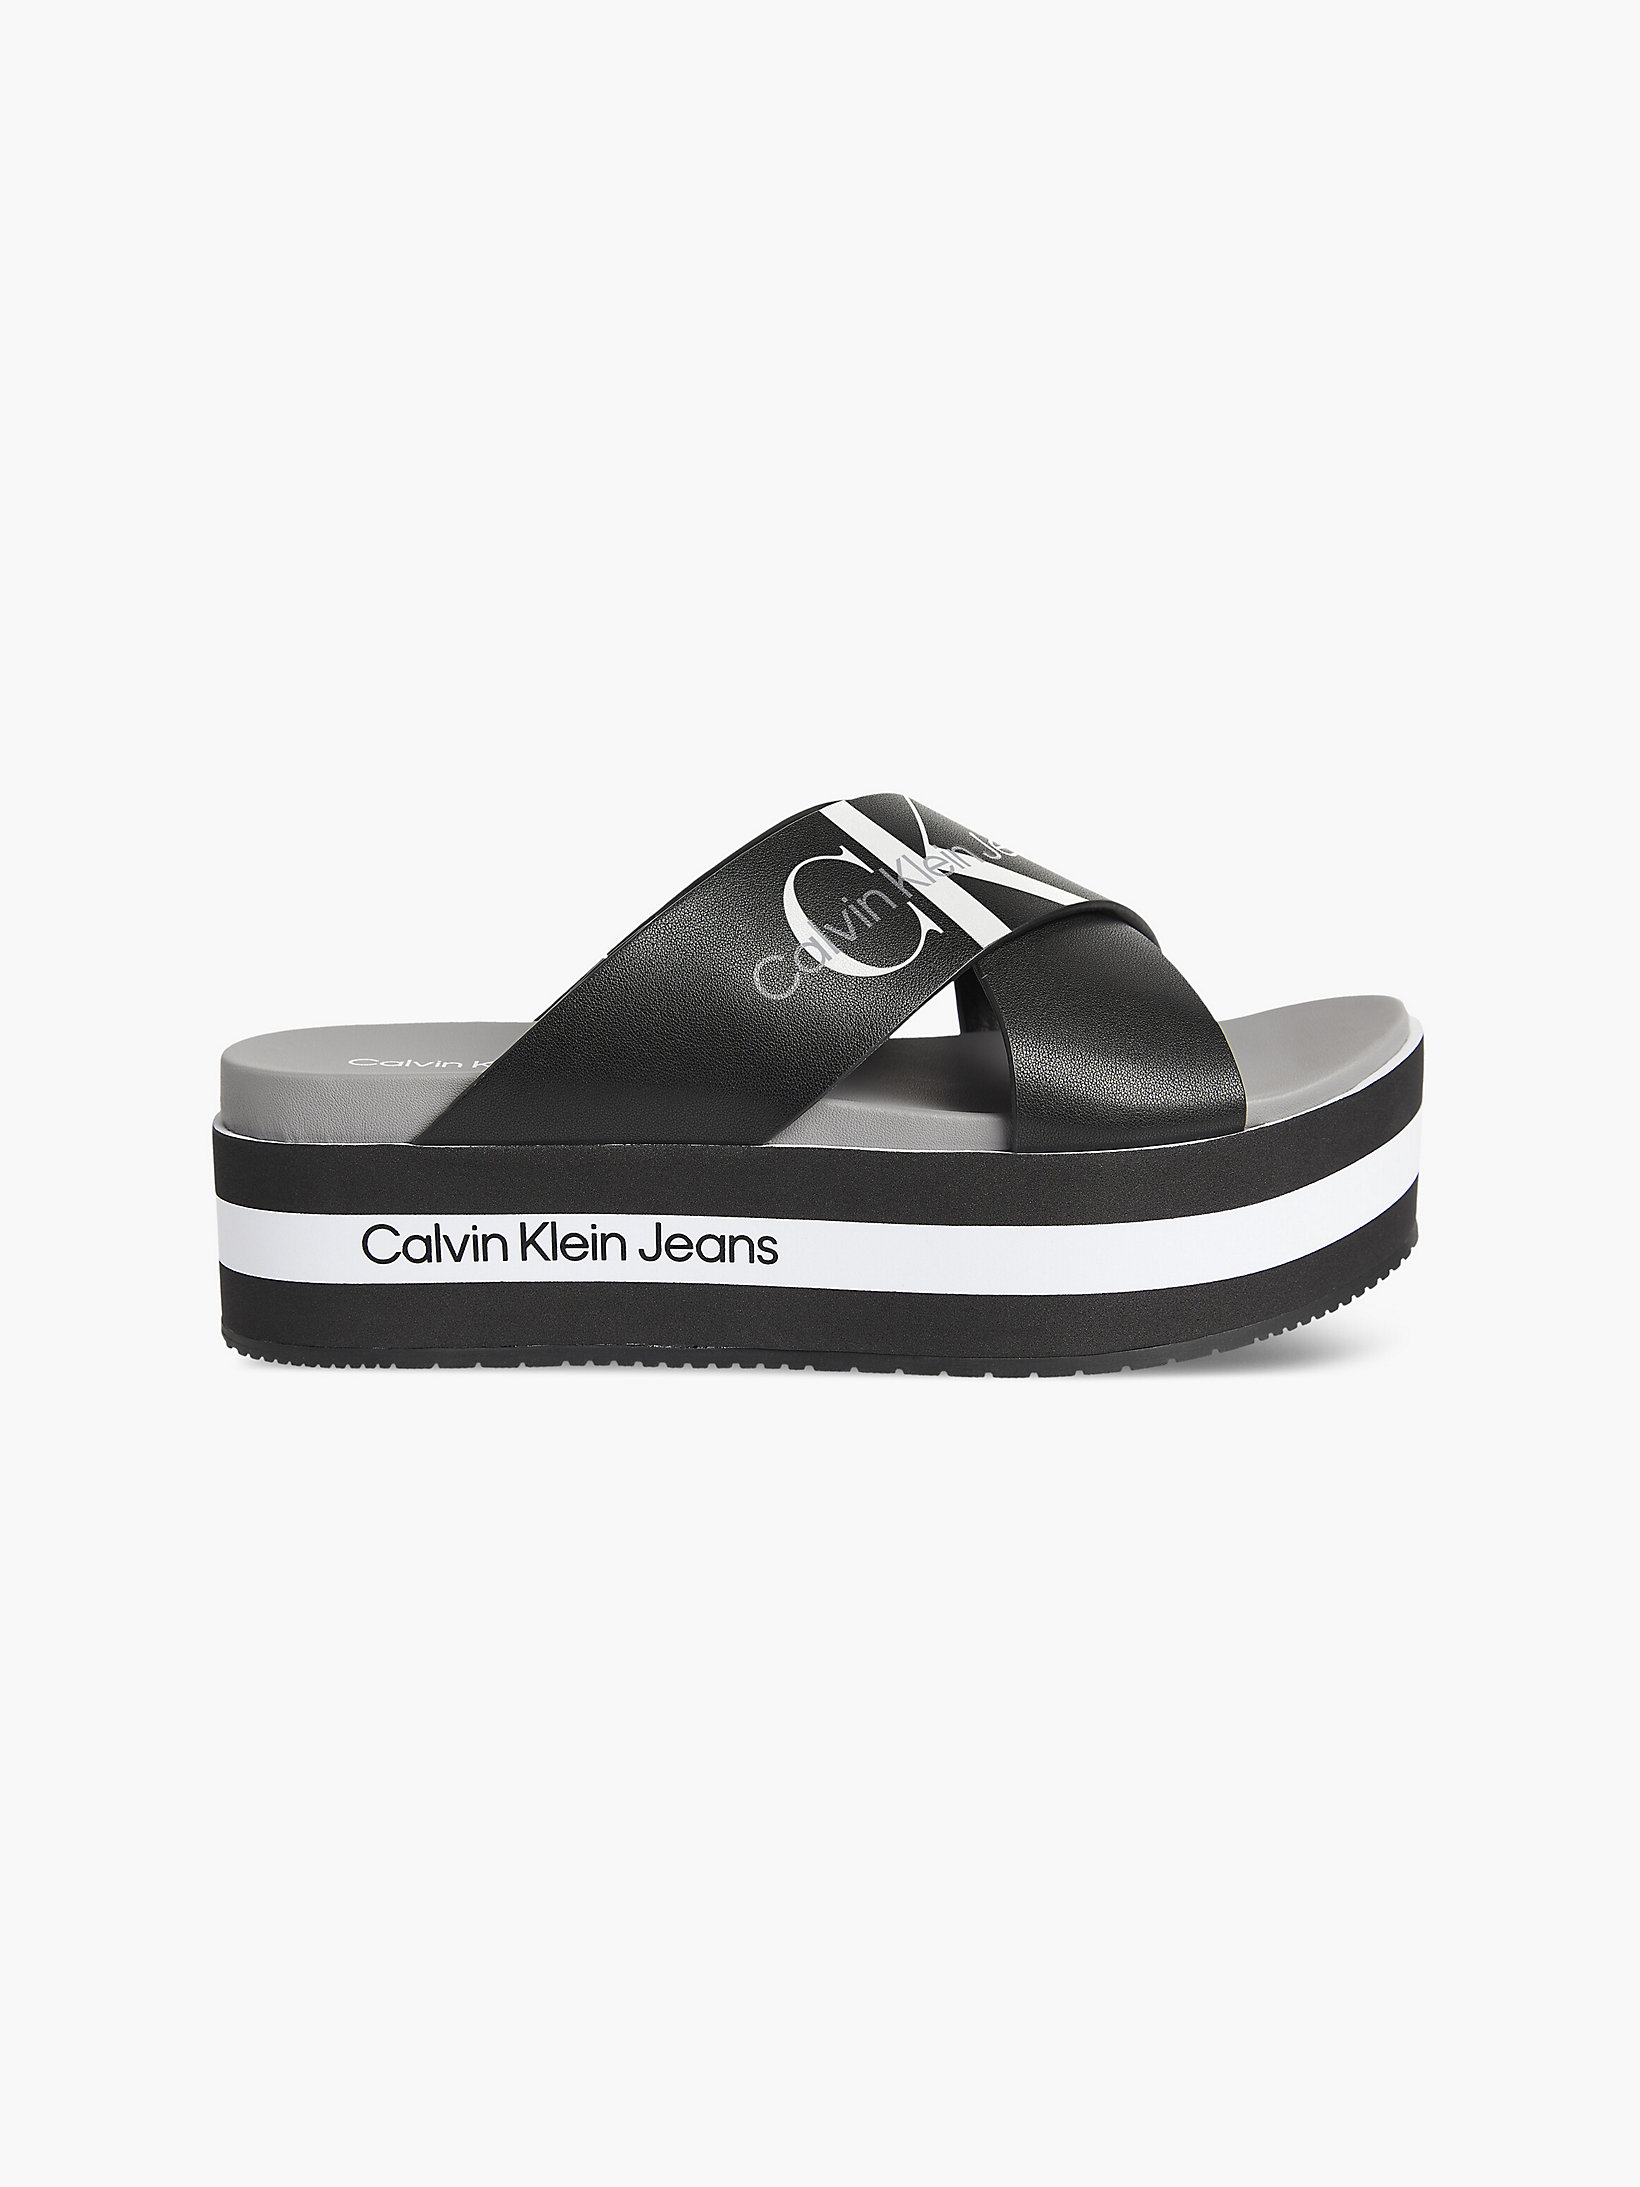 Black Leather Platform Sandals undefined women Calvin Klein